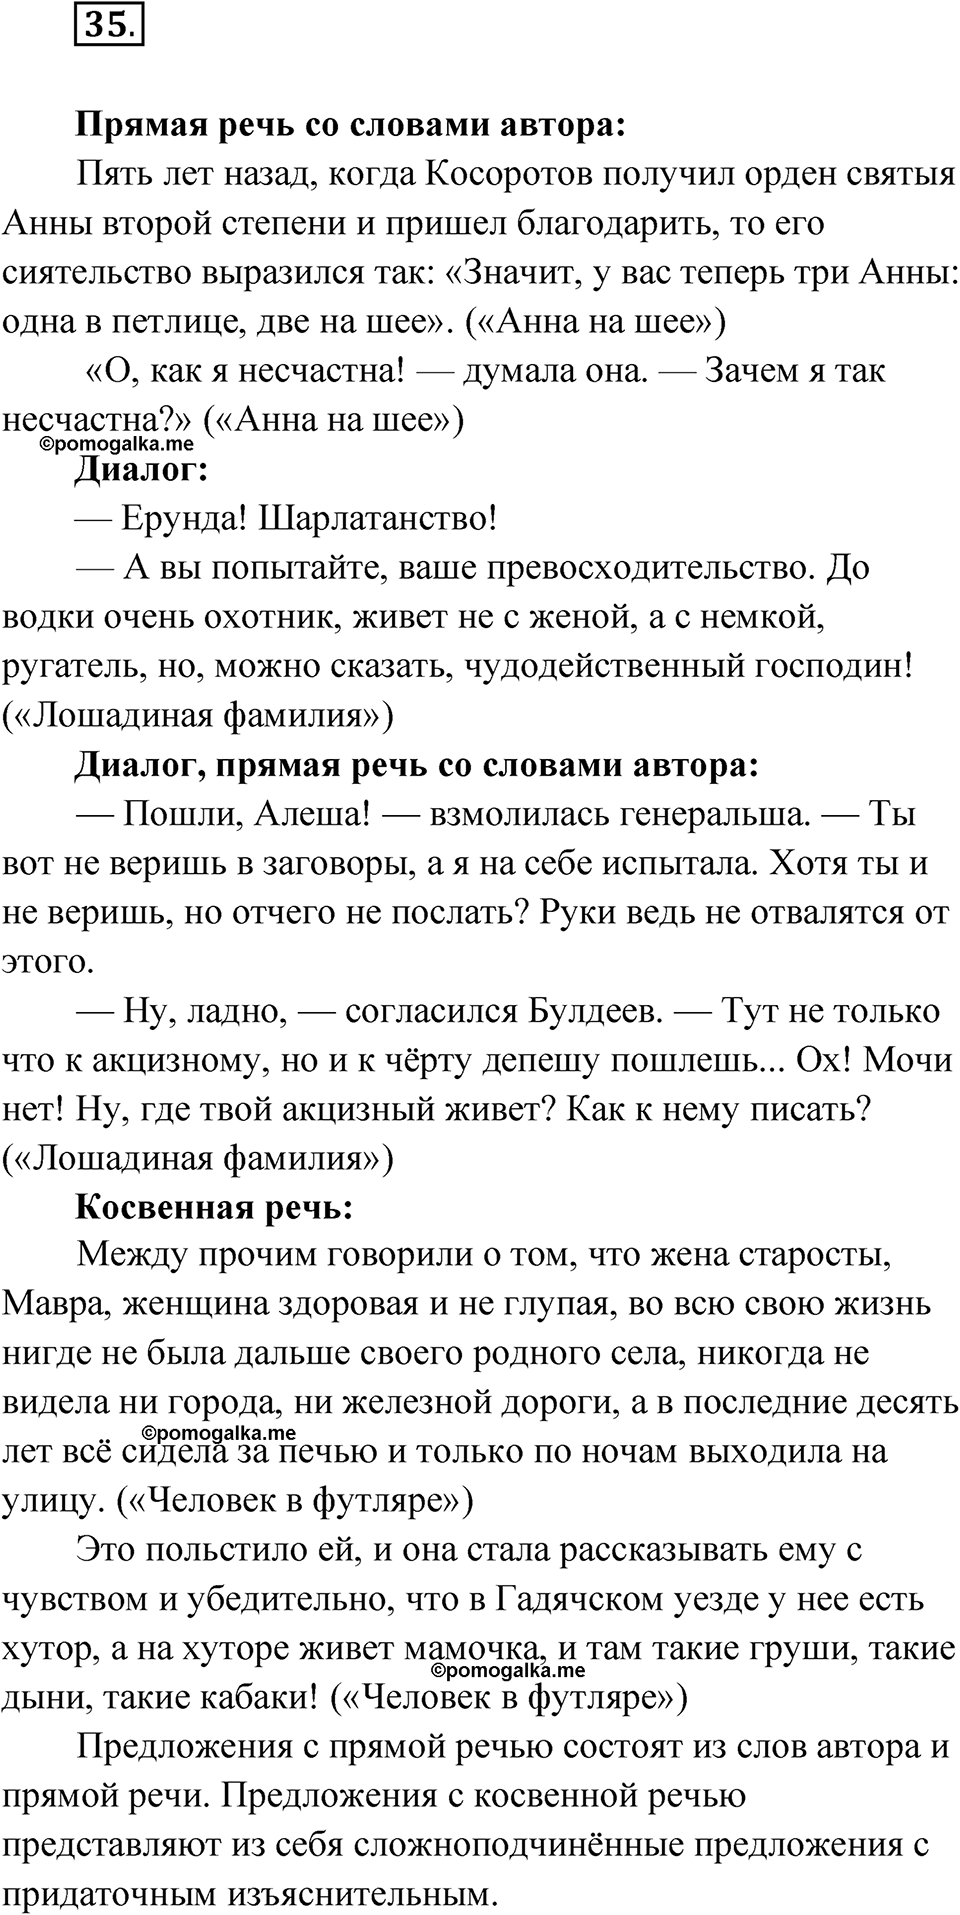 страница 51 упражнение 35 русский язык 9 класс Быстрова 2 часть 2022 год